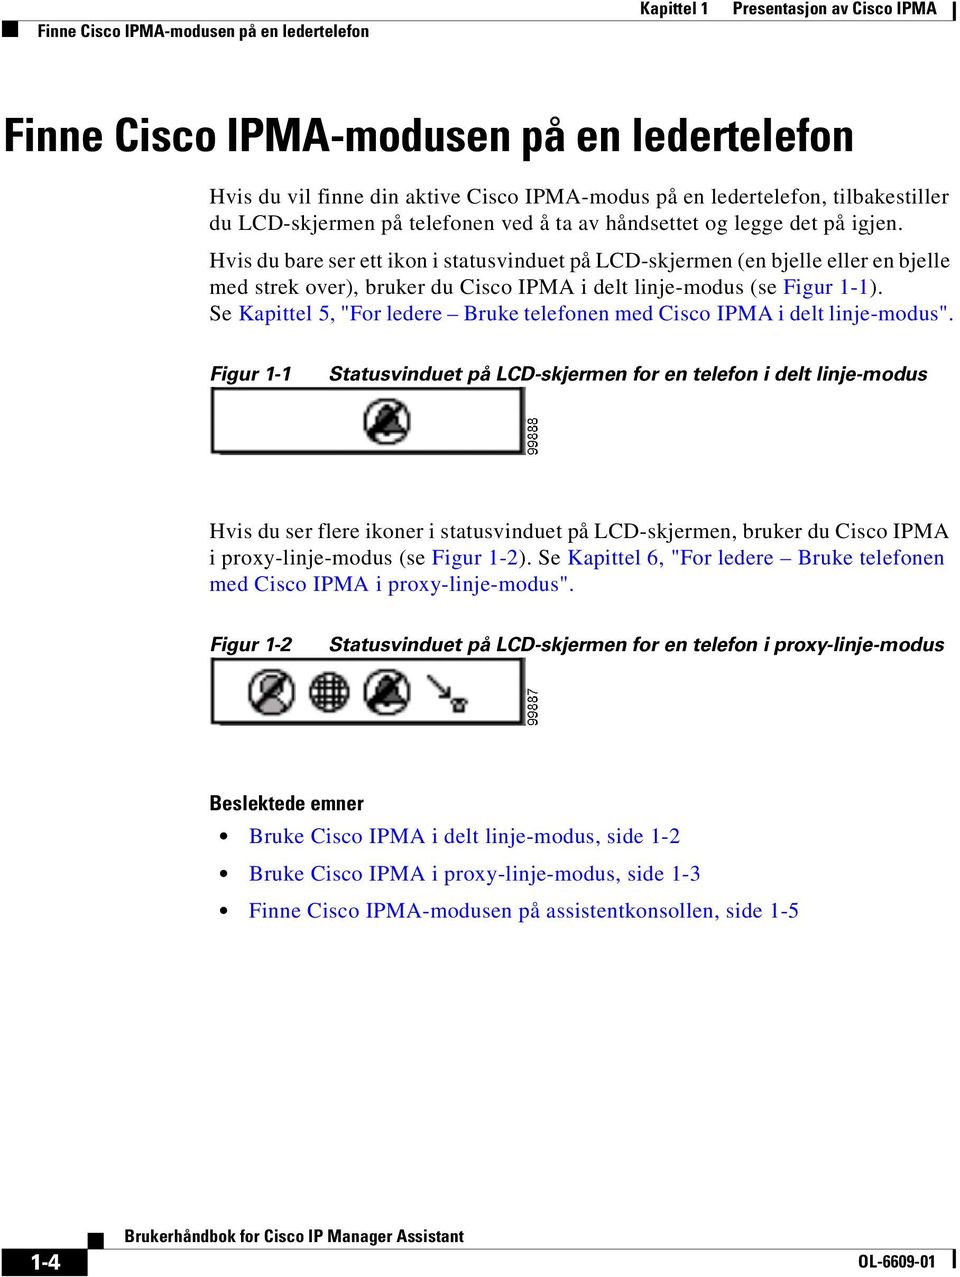 Hvis du bare ser ett ikon i statusvinduet på LCD-skjermen (en bjelle eller en bjelle med strek over), bruker du Cisco IPMA i delt linje-modus (se Figur 1-1).